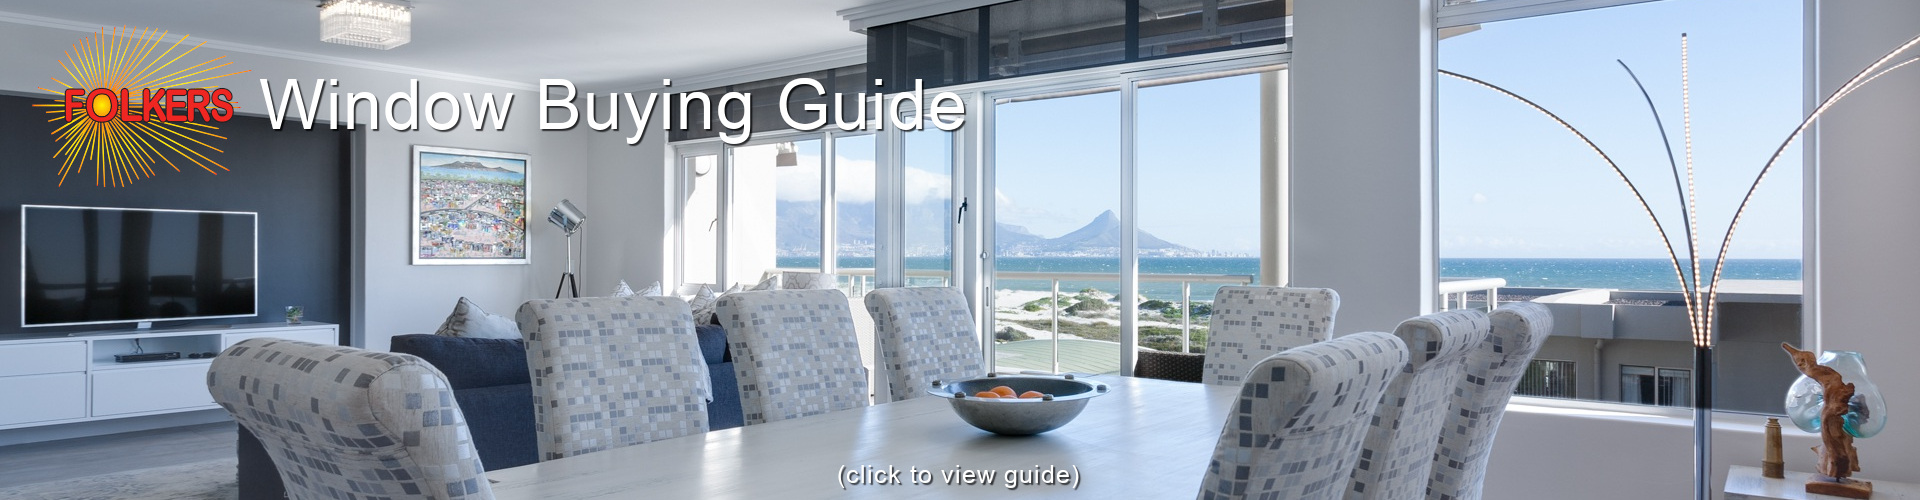 Folkers, Window Buyers Guide